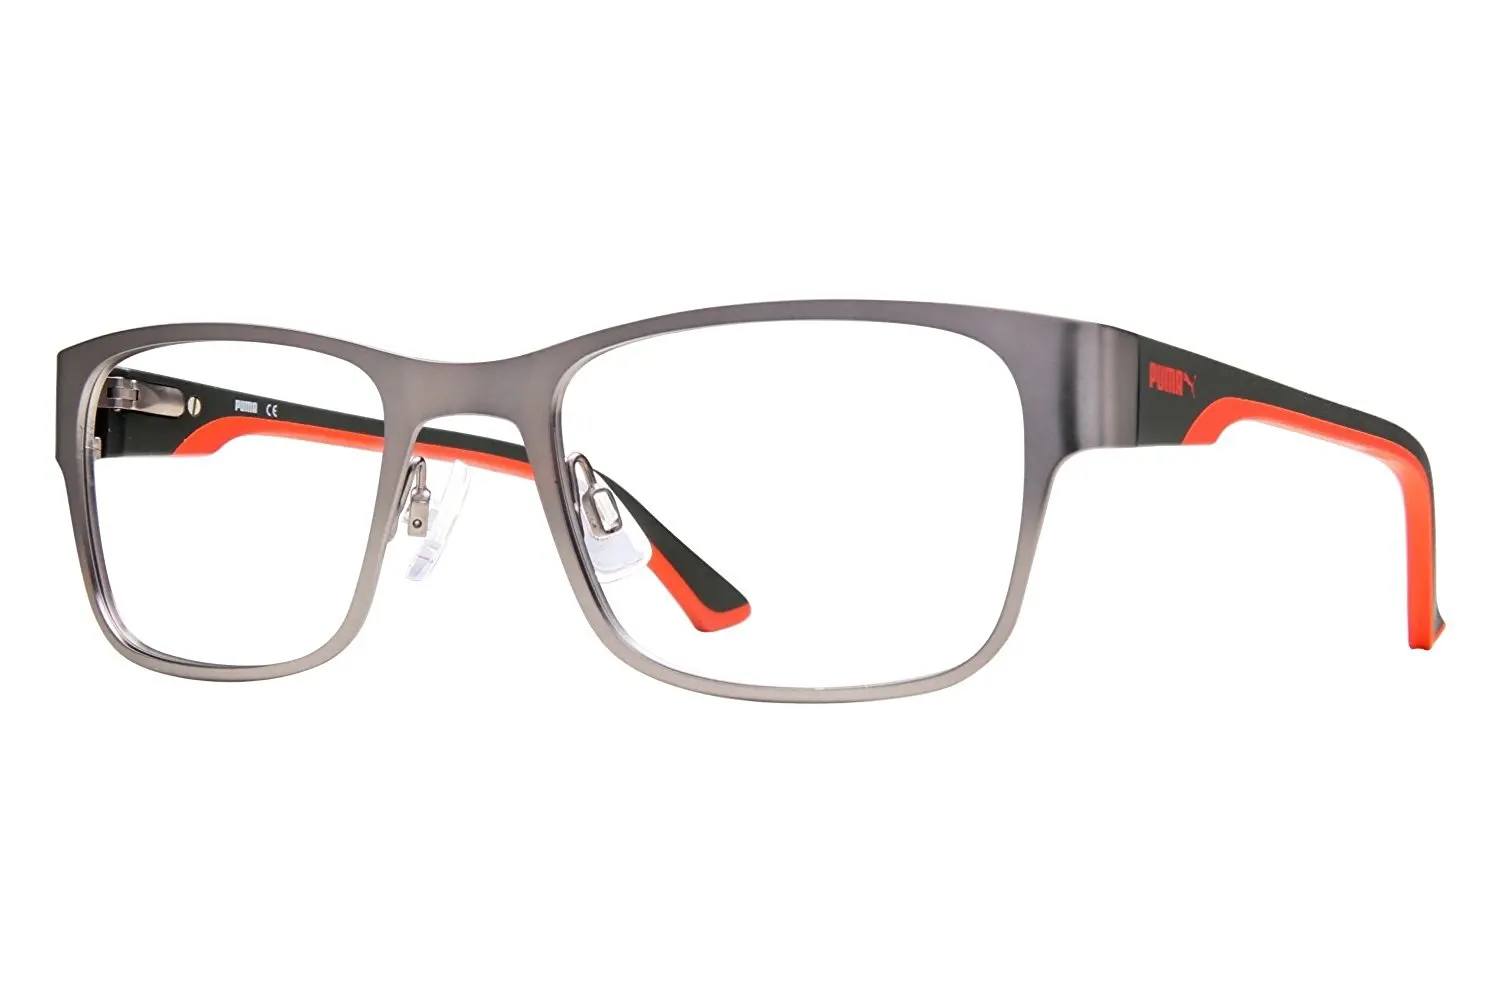 puma eyeglass frames